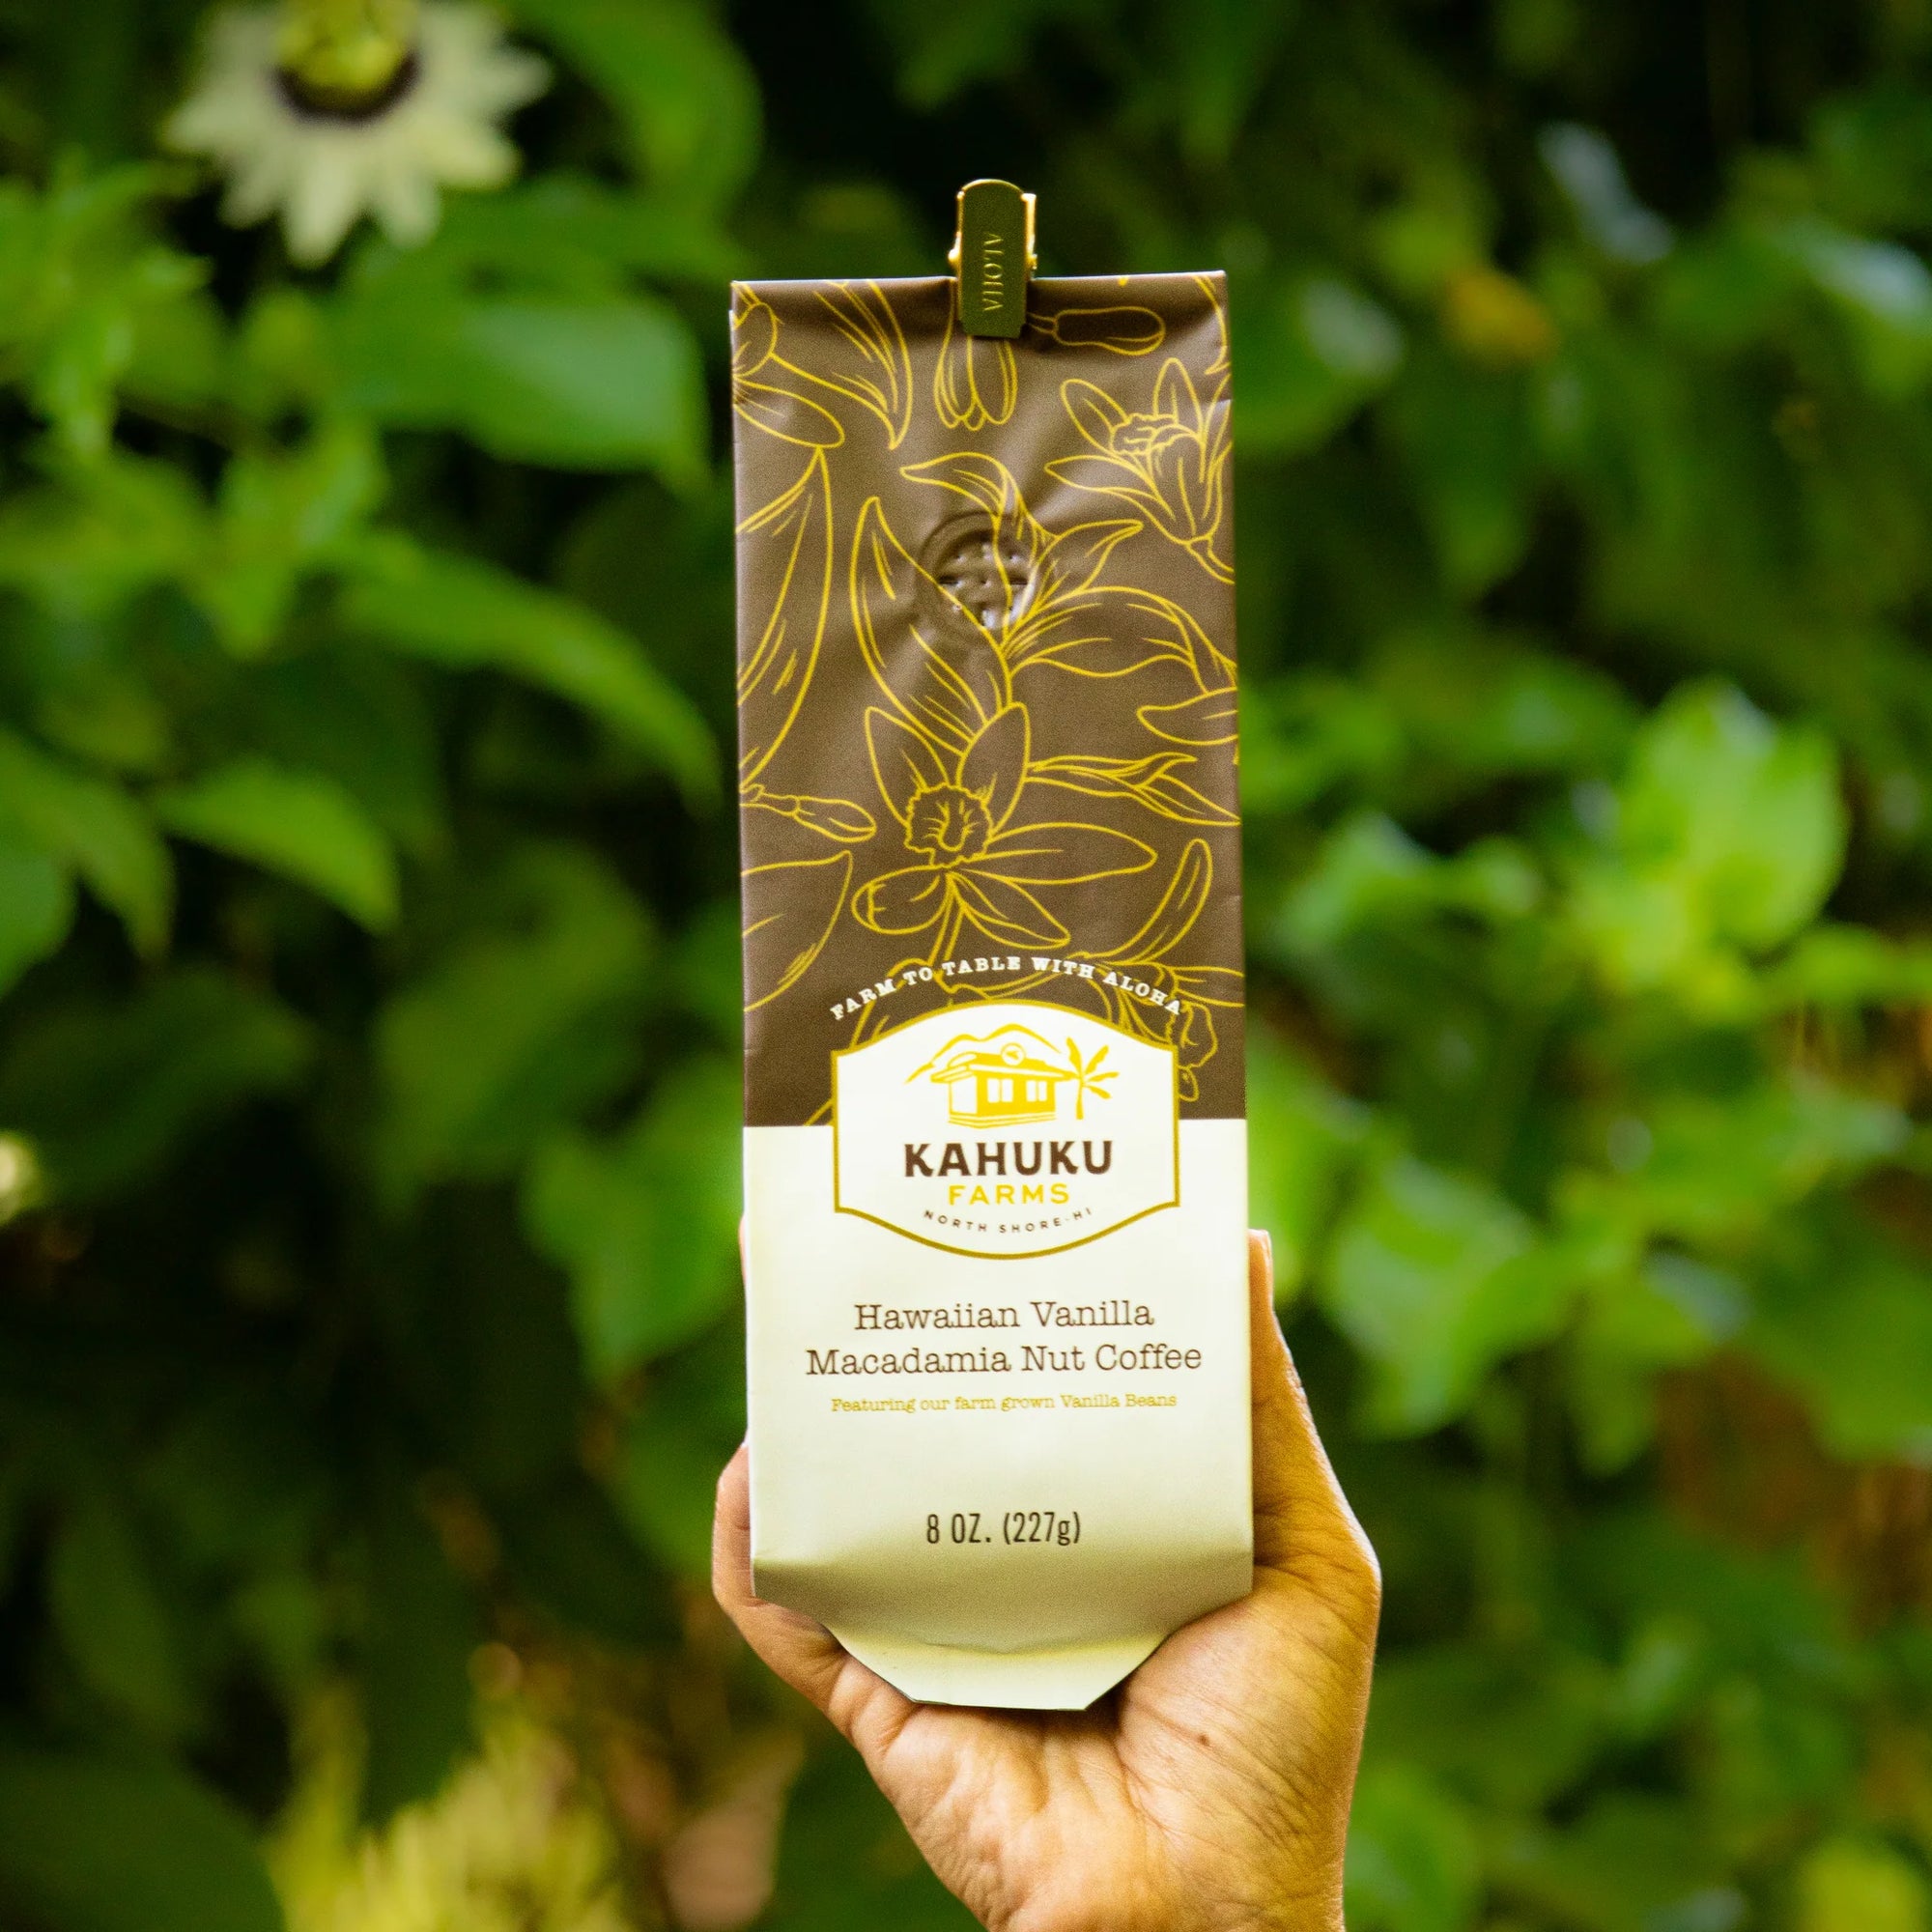 Kahuku Farms - Hawaiian Vanilla Macadamia Nut Coffee 8oz